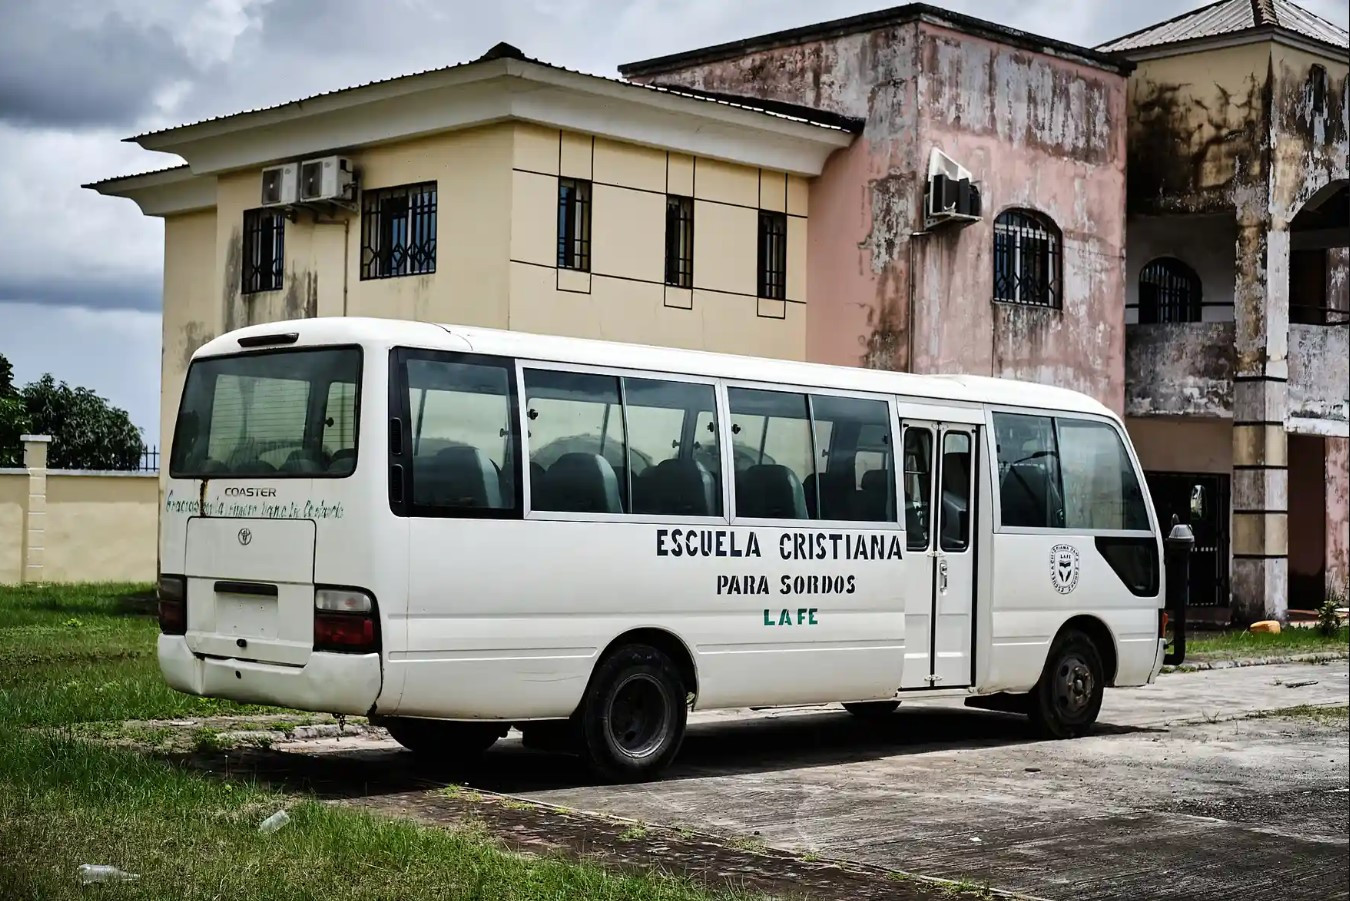 Xe buýt của trường không hoạt động do không được bảo trì. Ảnh: Diego Menjibar Reynes.